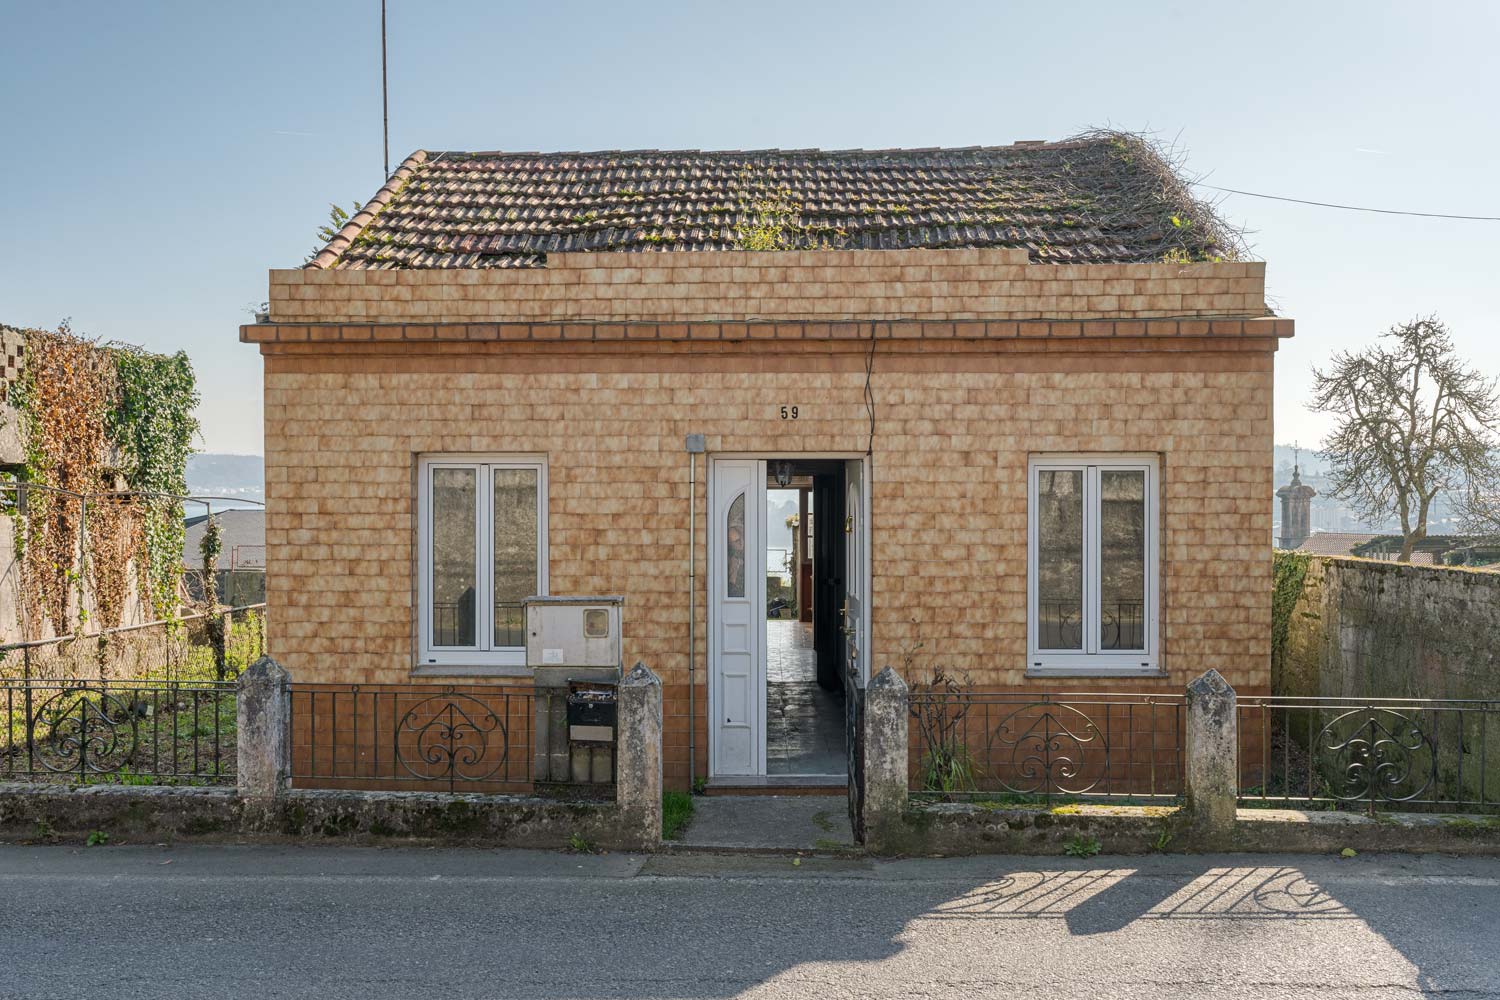 Fachada de una pequeña casa con tejado a dos aguas y vegetación creciendo, ubicada en una tranquila calle de Sada